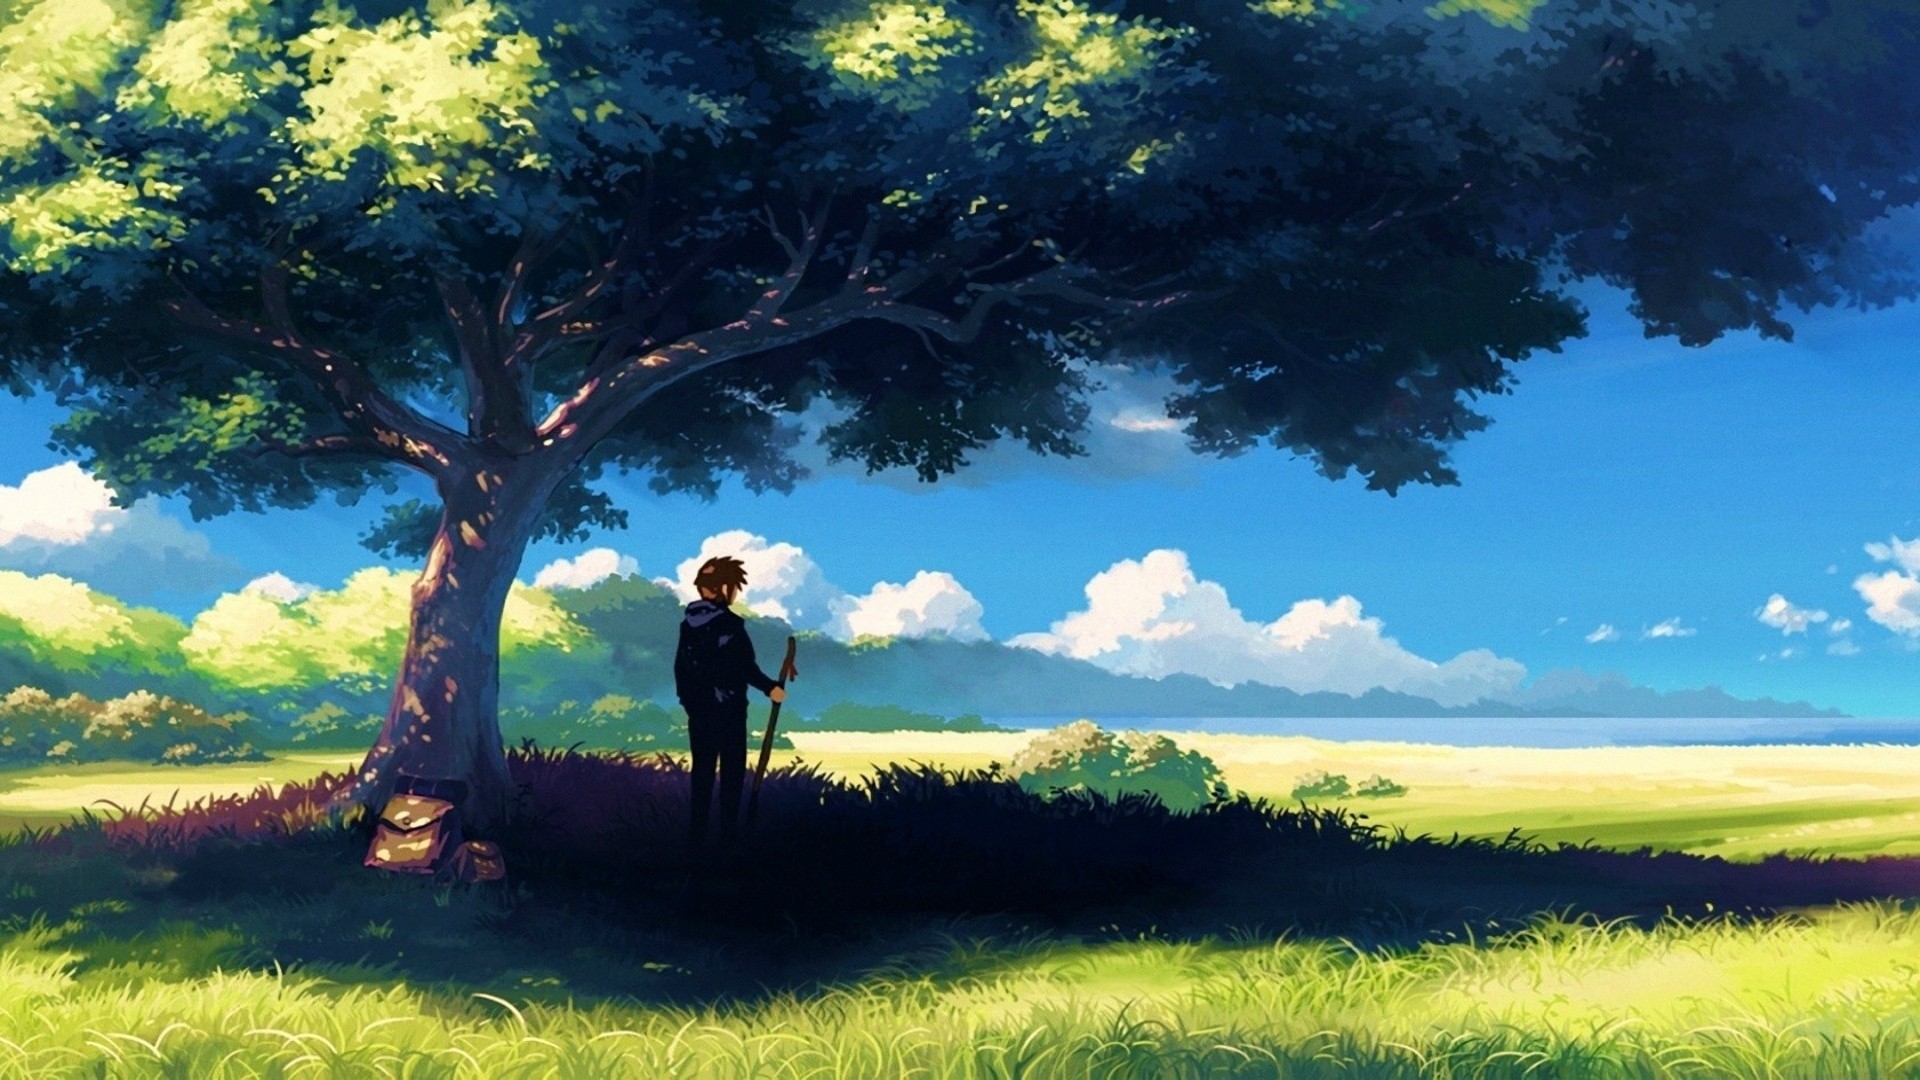 1920x1080 1920Ã1080-Anime-Scenery-Boy-Under-Tree-Anime-Scenery-wallpaper-wp200944